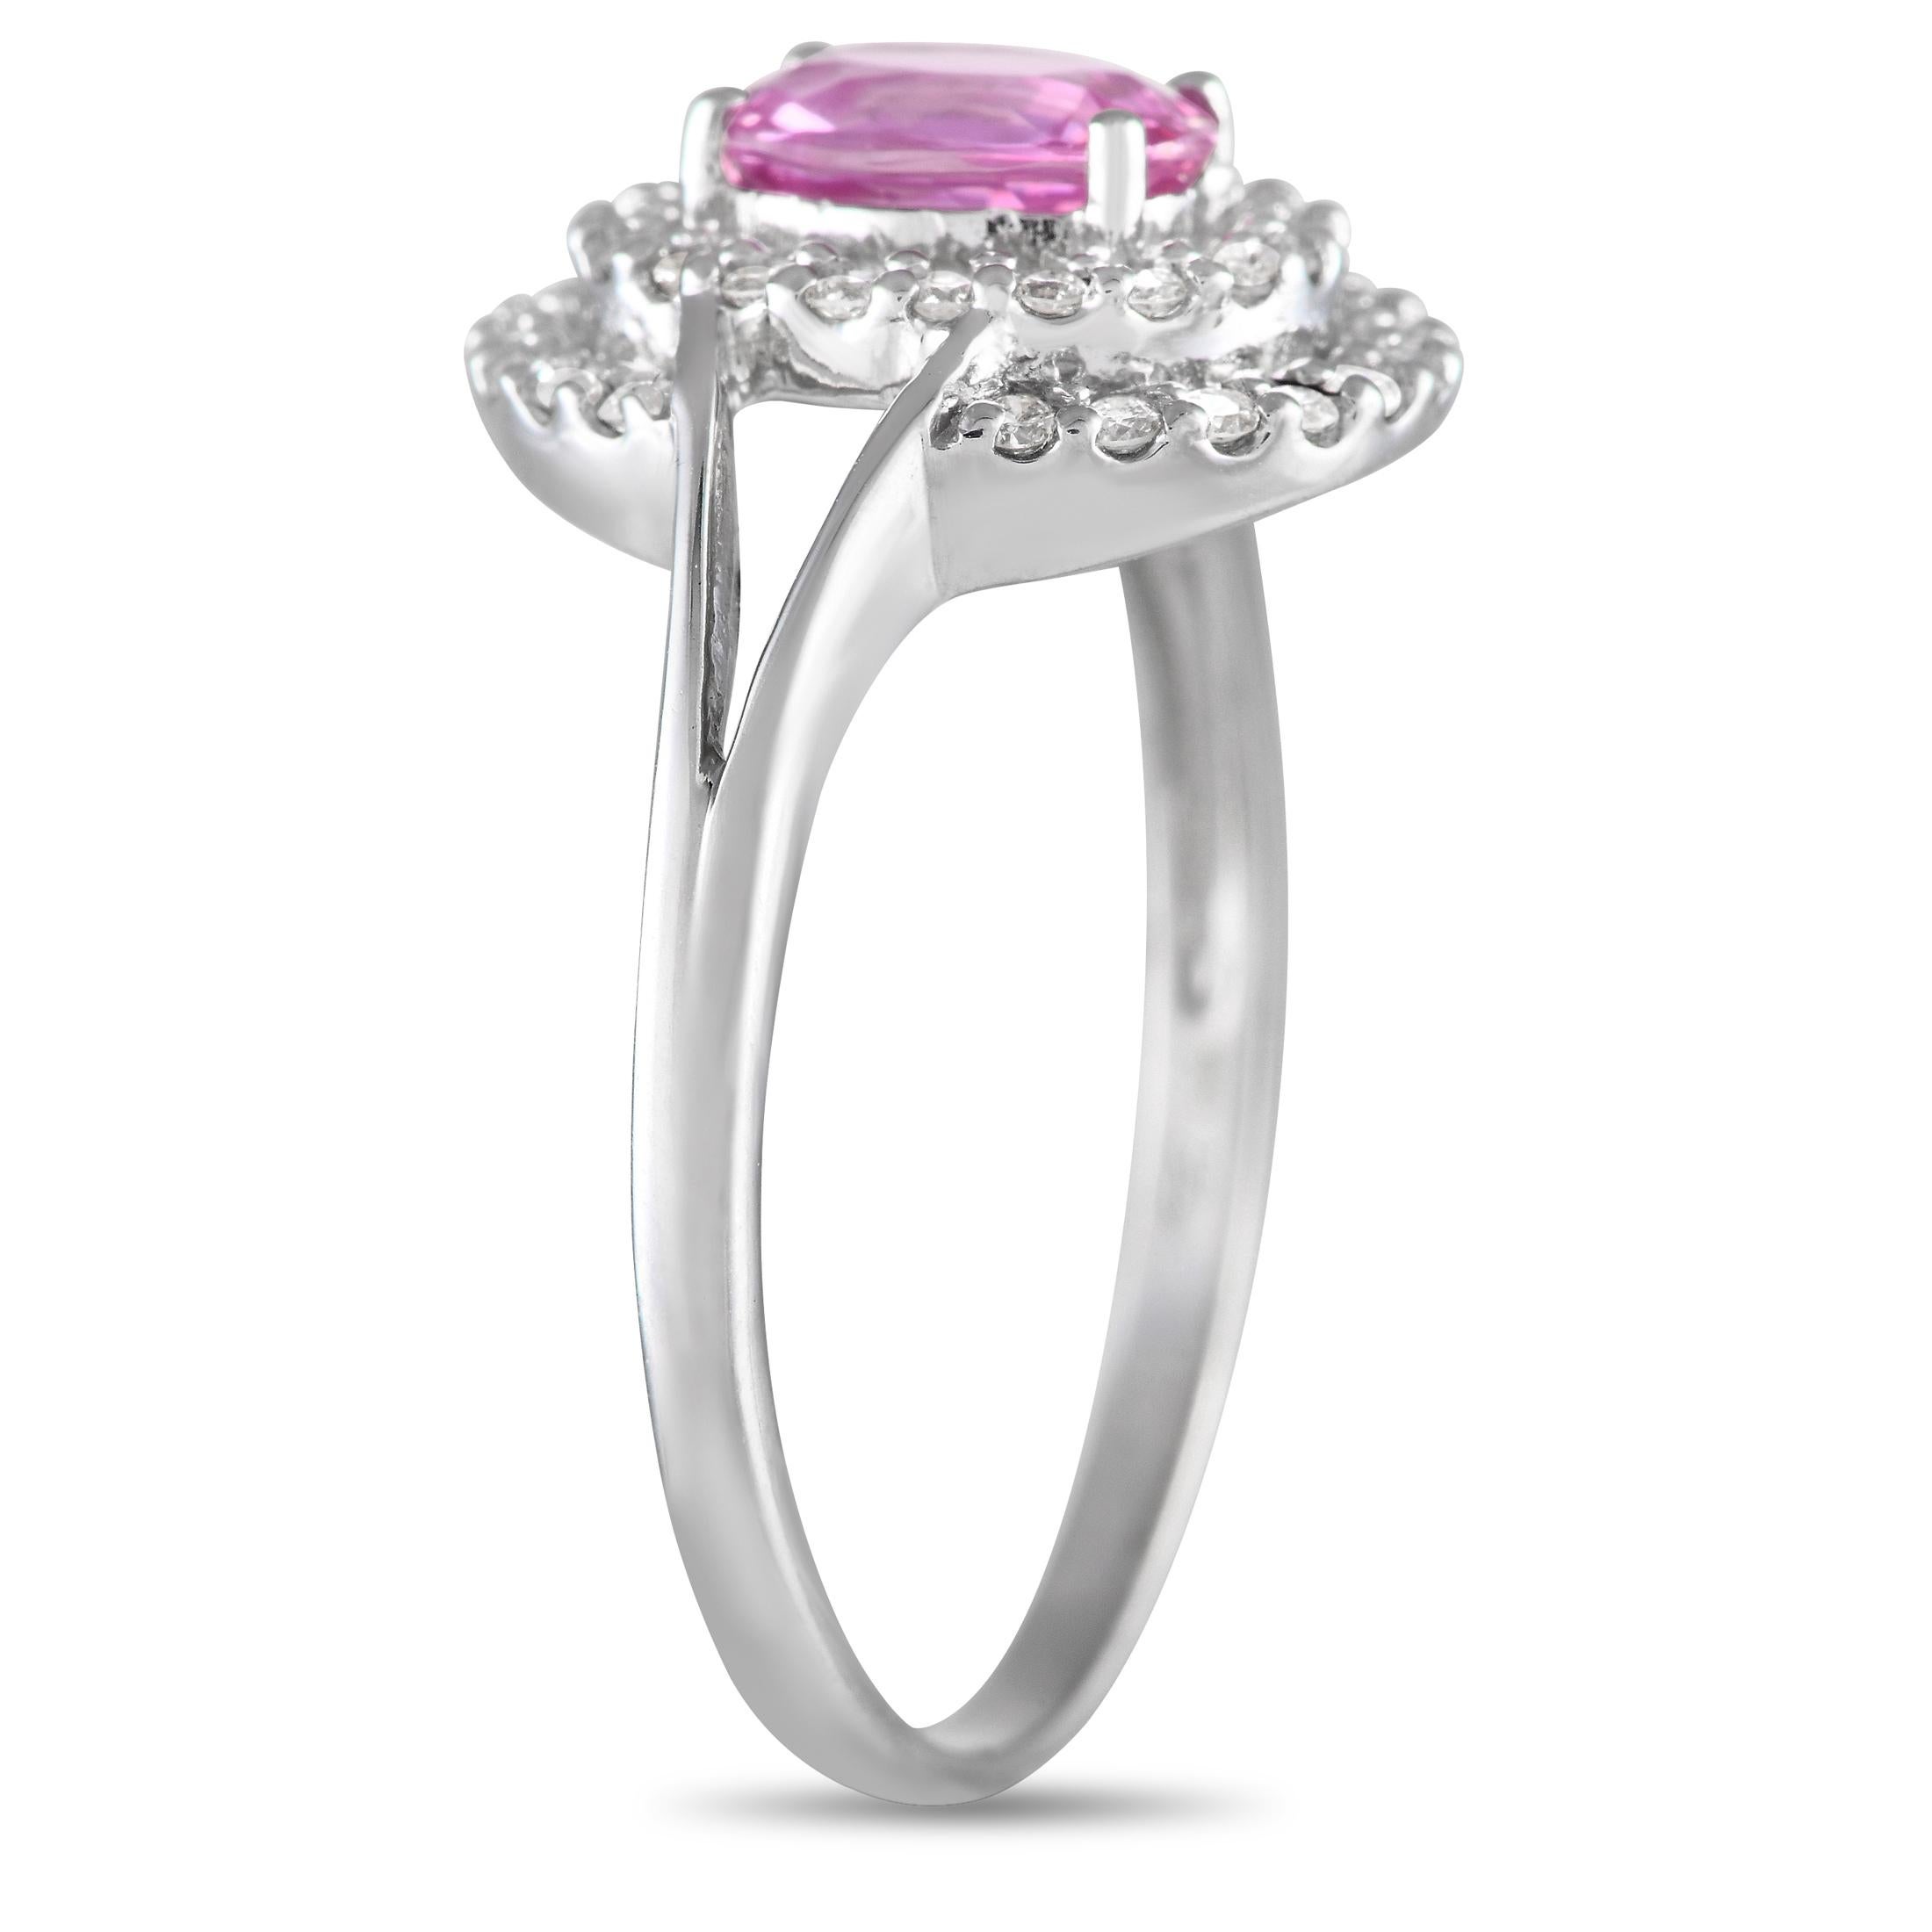 Sie wird die kühne, aber schlichte Ästhetik dieses Rings lieben. Das schlanke Weißgoldband hat geteilte Schultern, die zu einem Halo aus runden Diamanten führen, die einen bezaubernden rosa Saphir von 1,23 Karat einrahmen. Ein Paar Diamantbögen